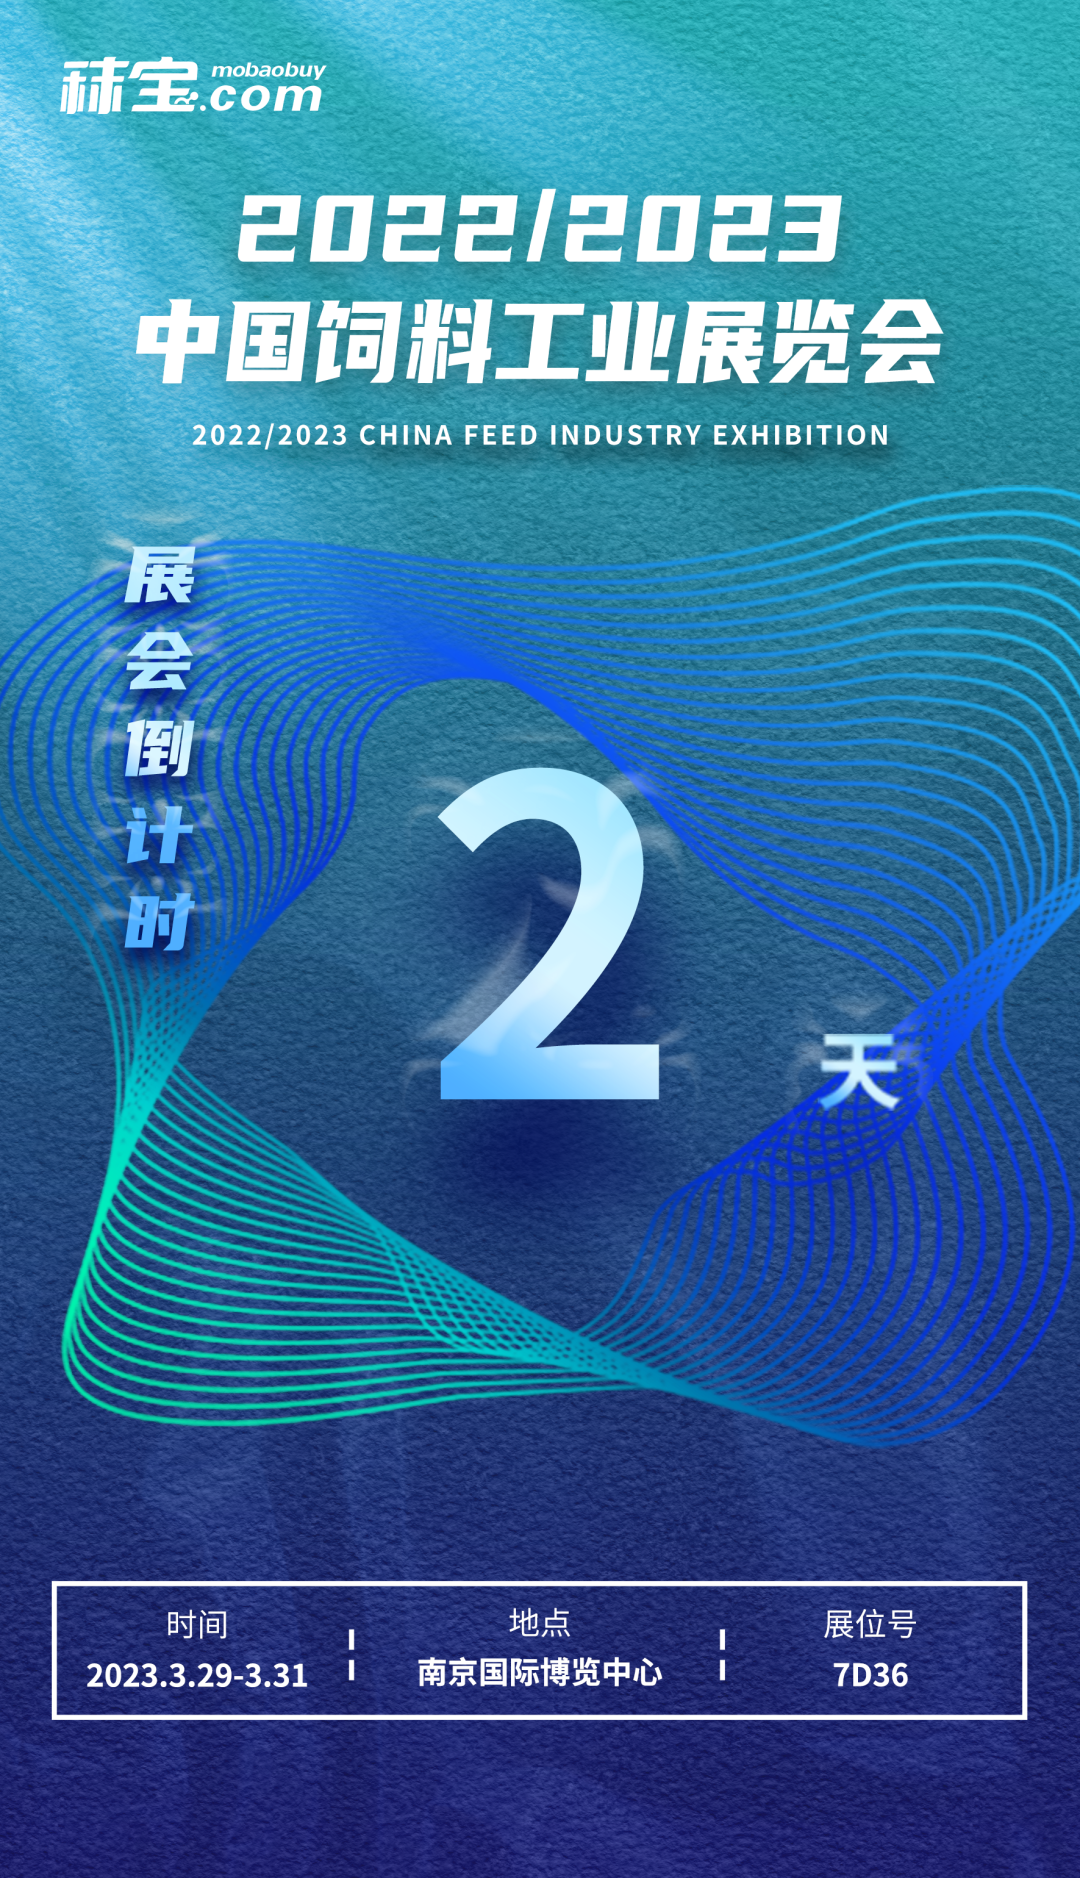 秣宝邀您参加2022/2023中国饲料工业展览会